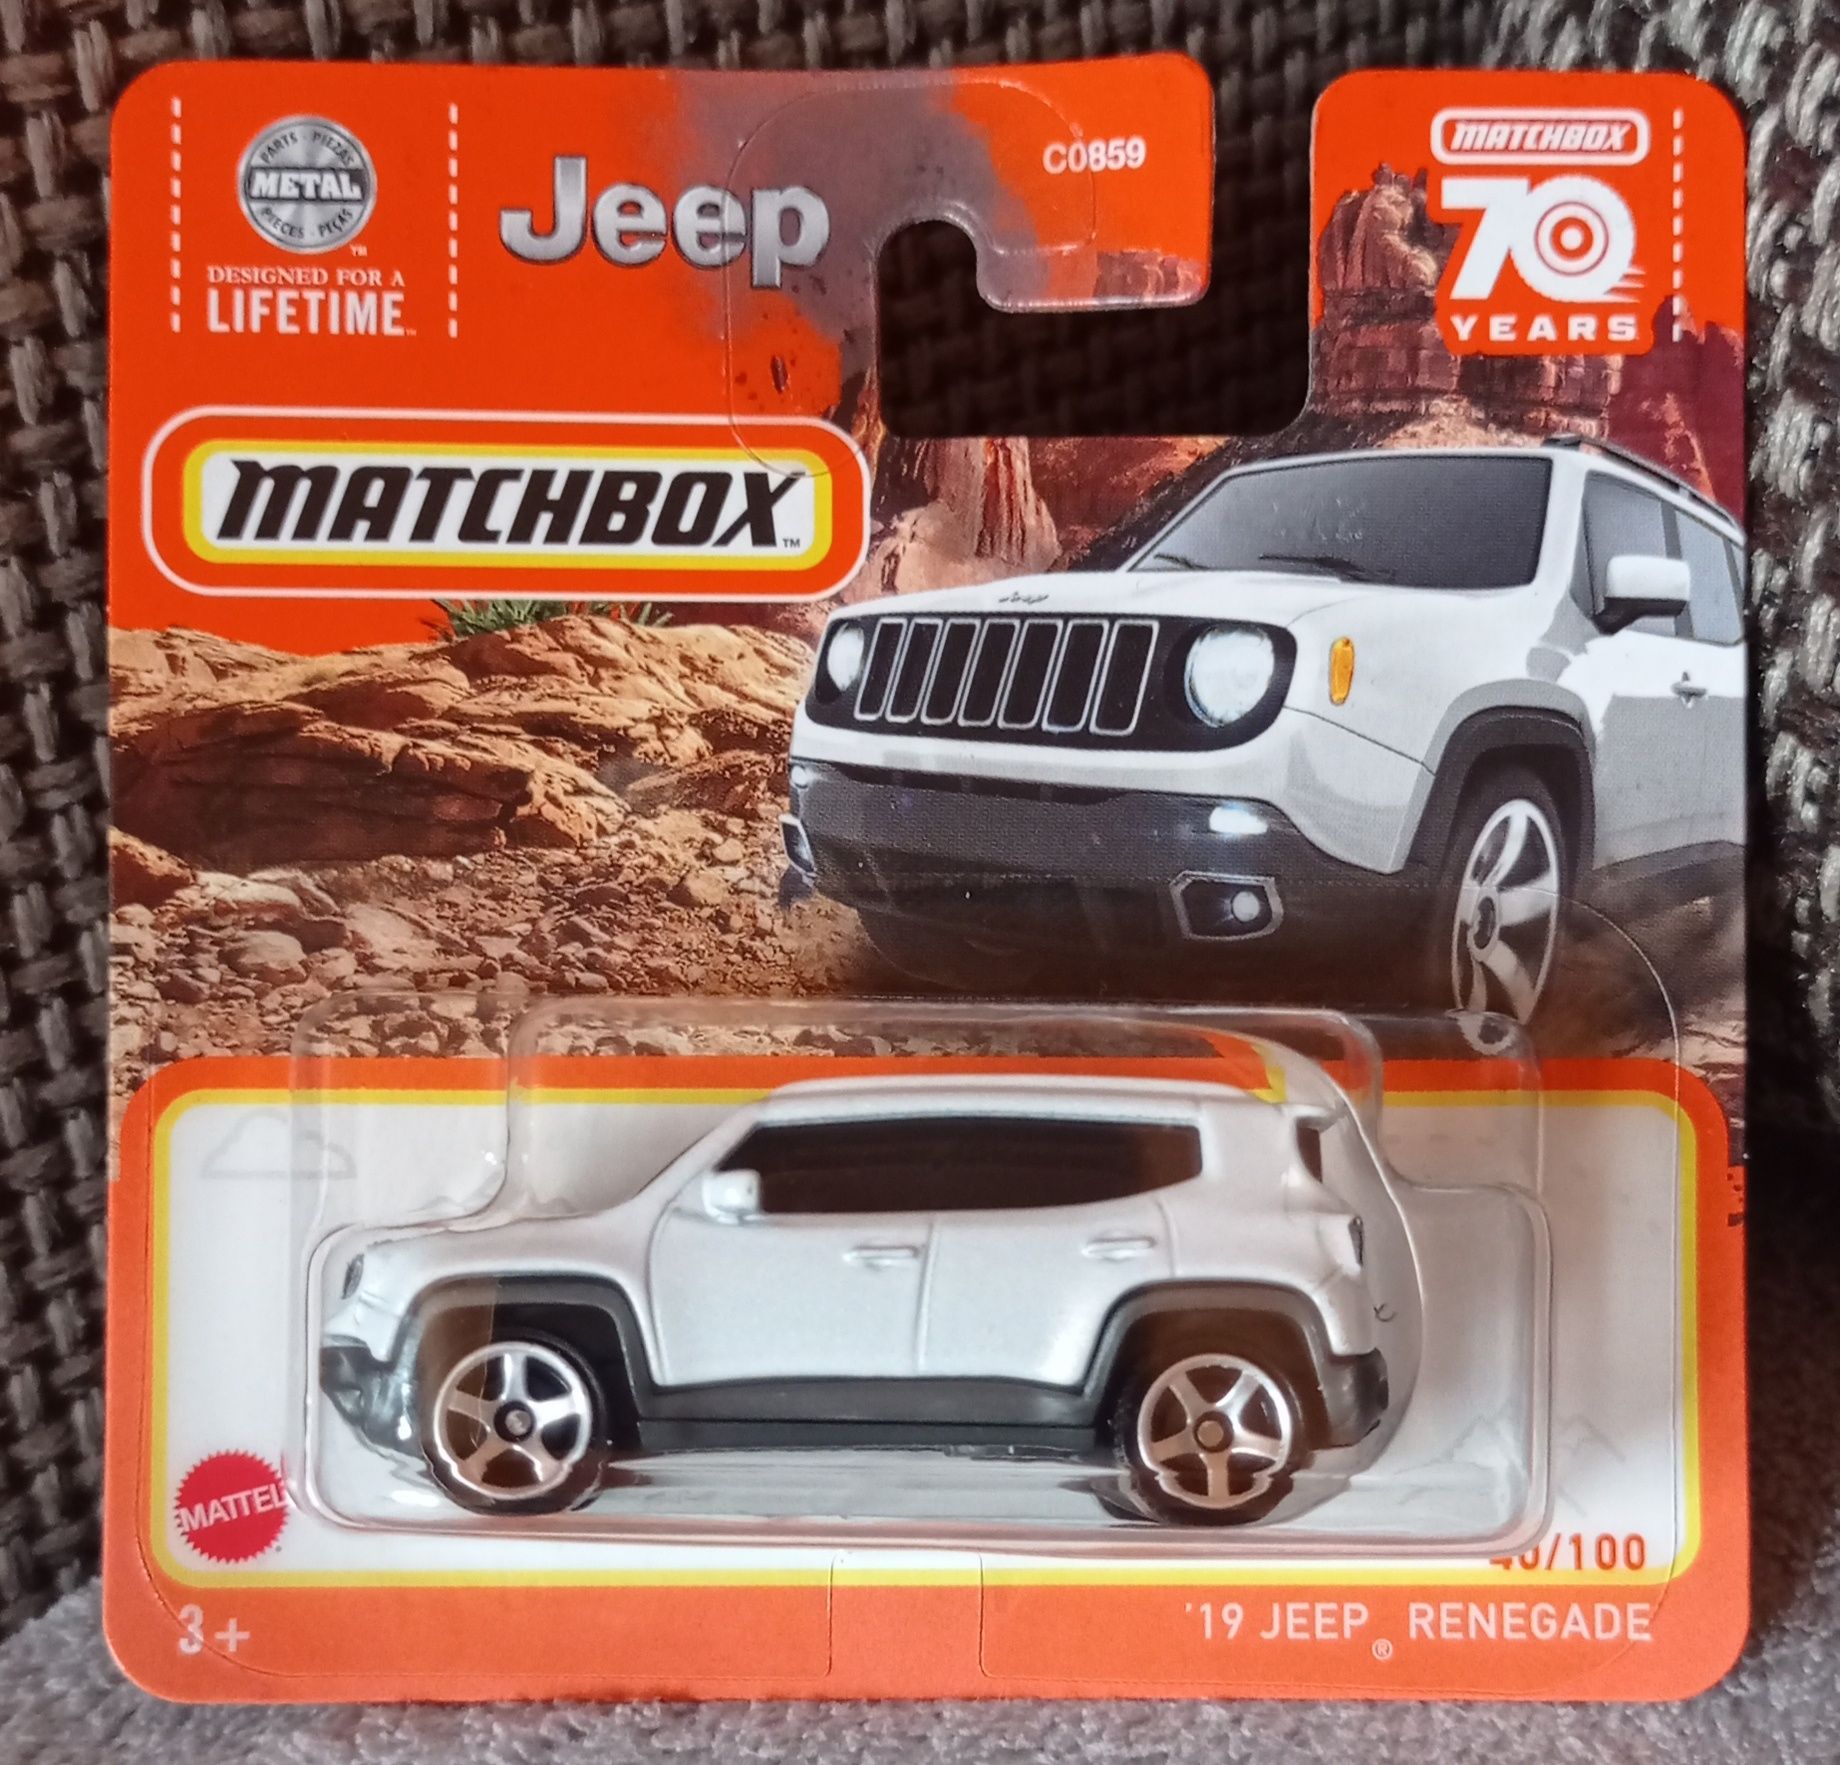 Matchbox 19 Jeep Renegade auto samochód resorak zabawka dla dzieci